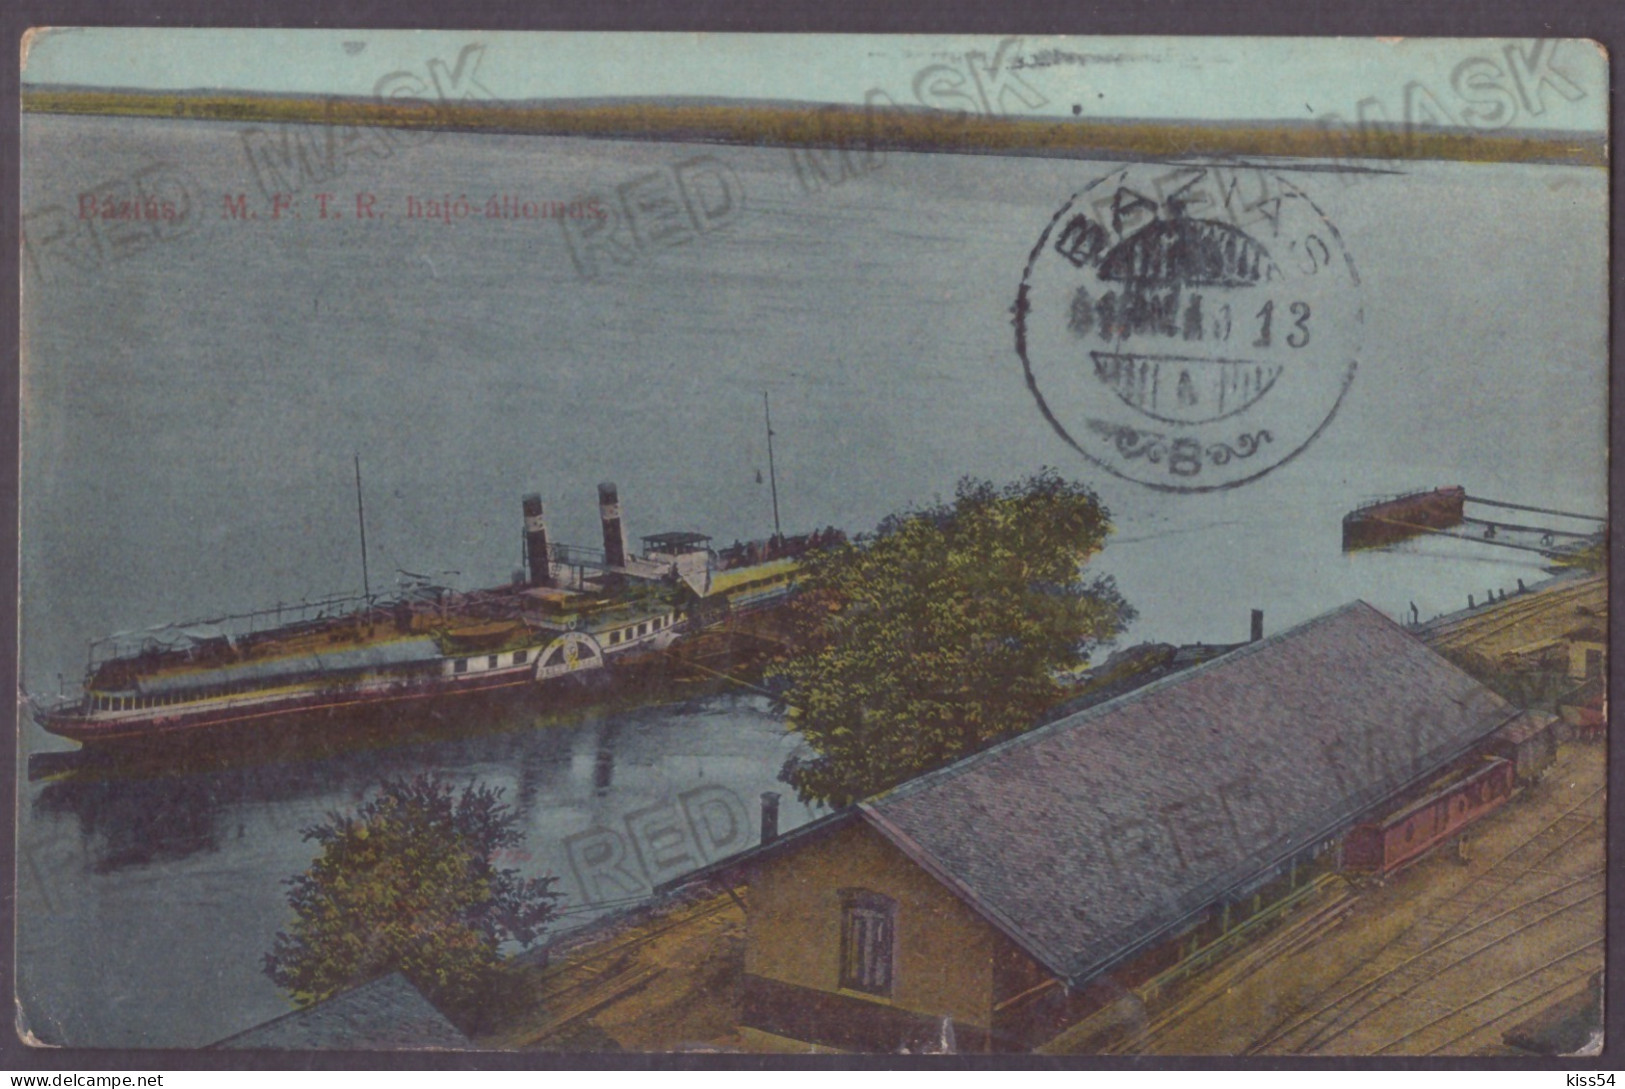 RO 40 - 23121 BAZIAS, Caras-Severin, Railway & Ship, Romania - Old Postcard - Used - 1913 - Romania